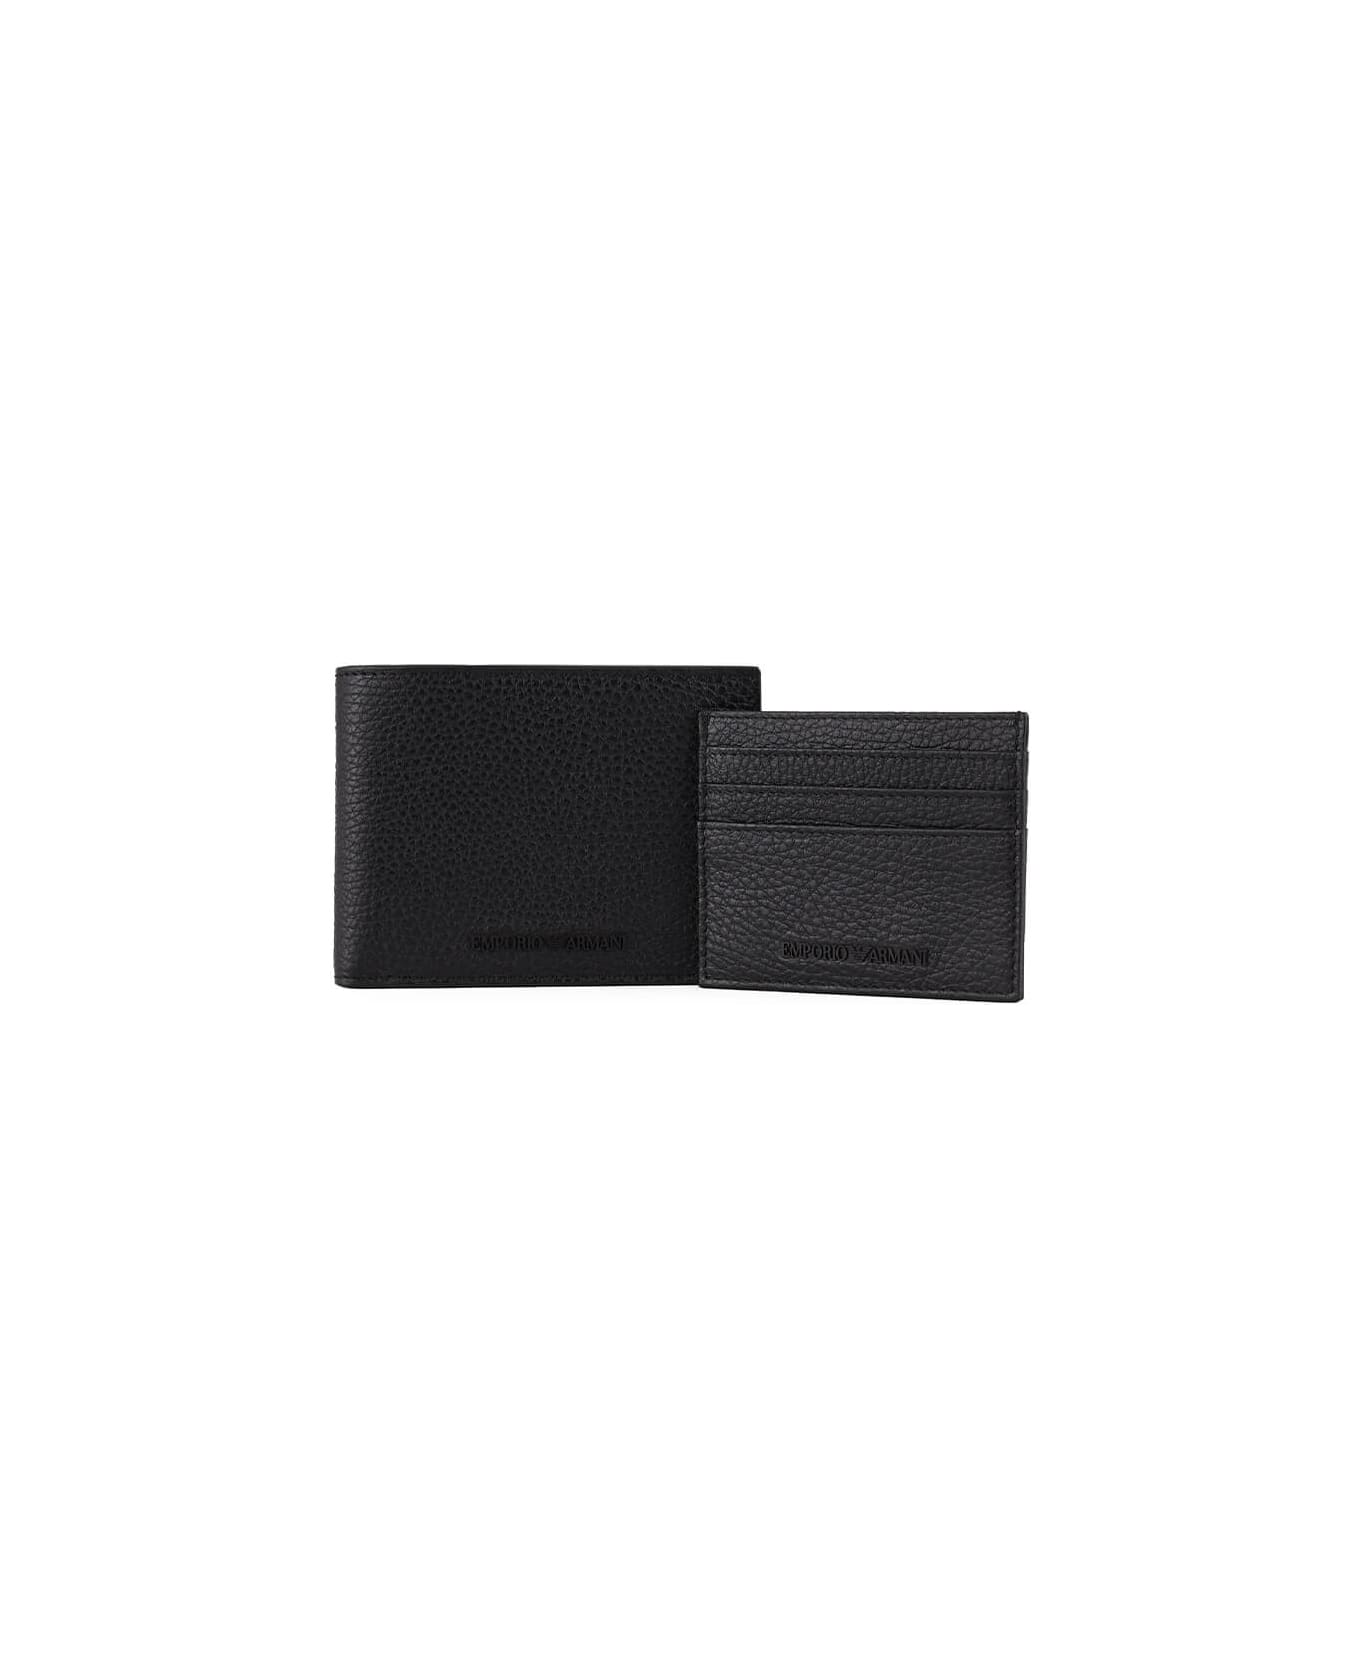 Emporio Armani Black Wallet+card Holder Set - Nero 財布